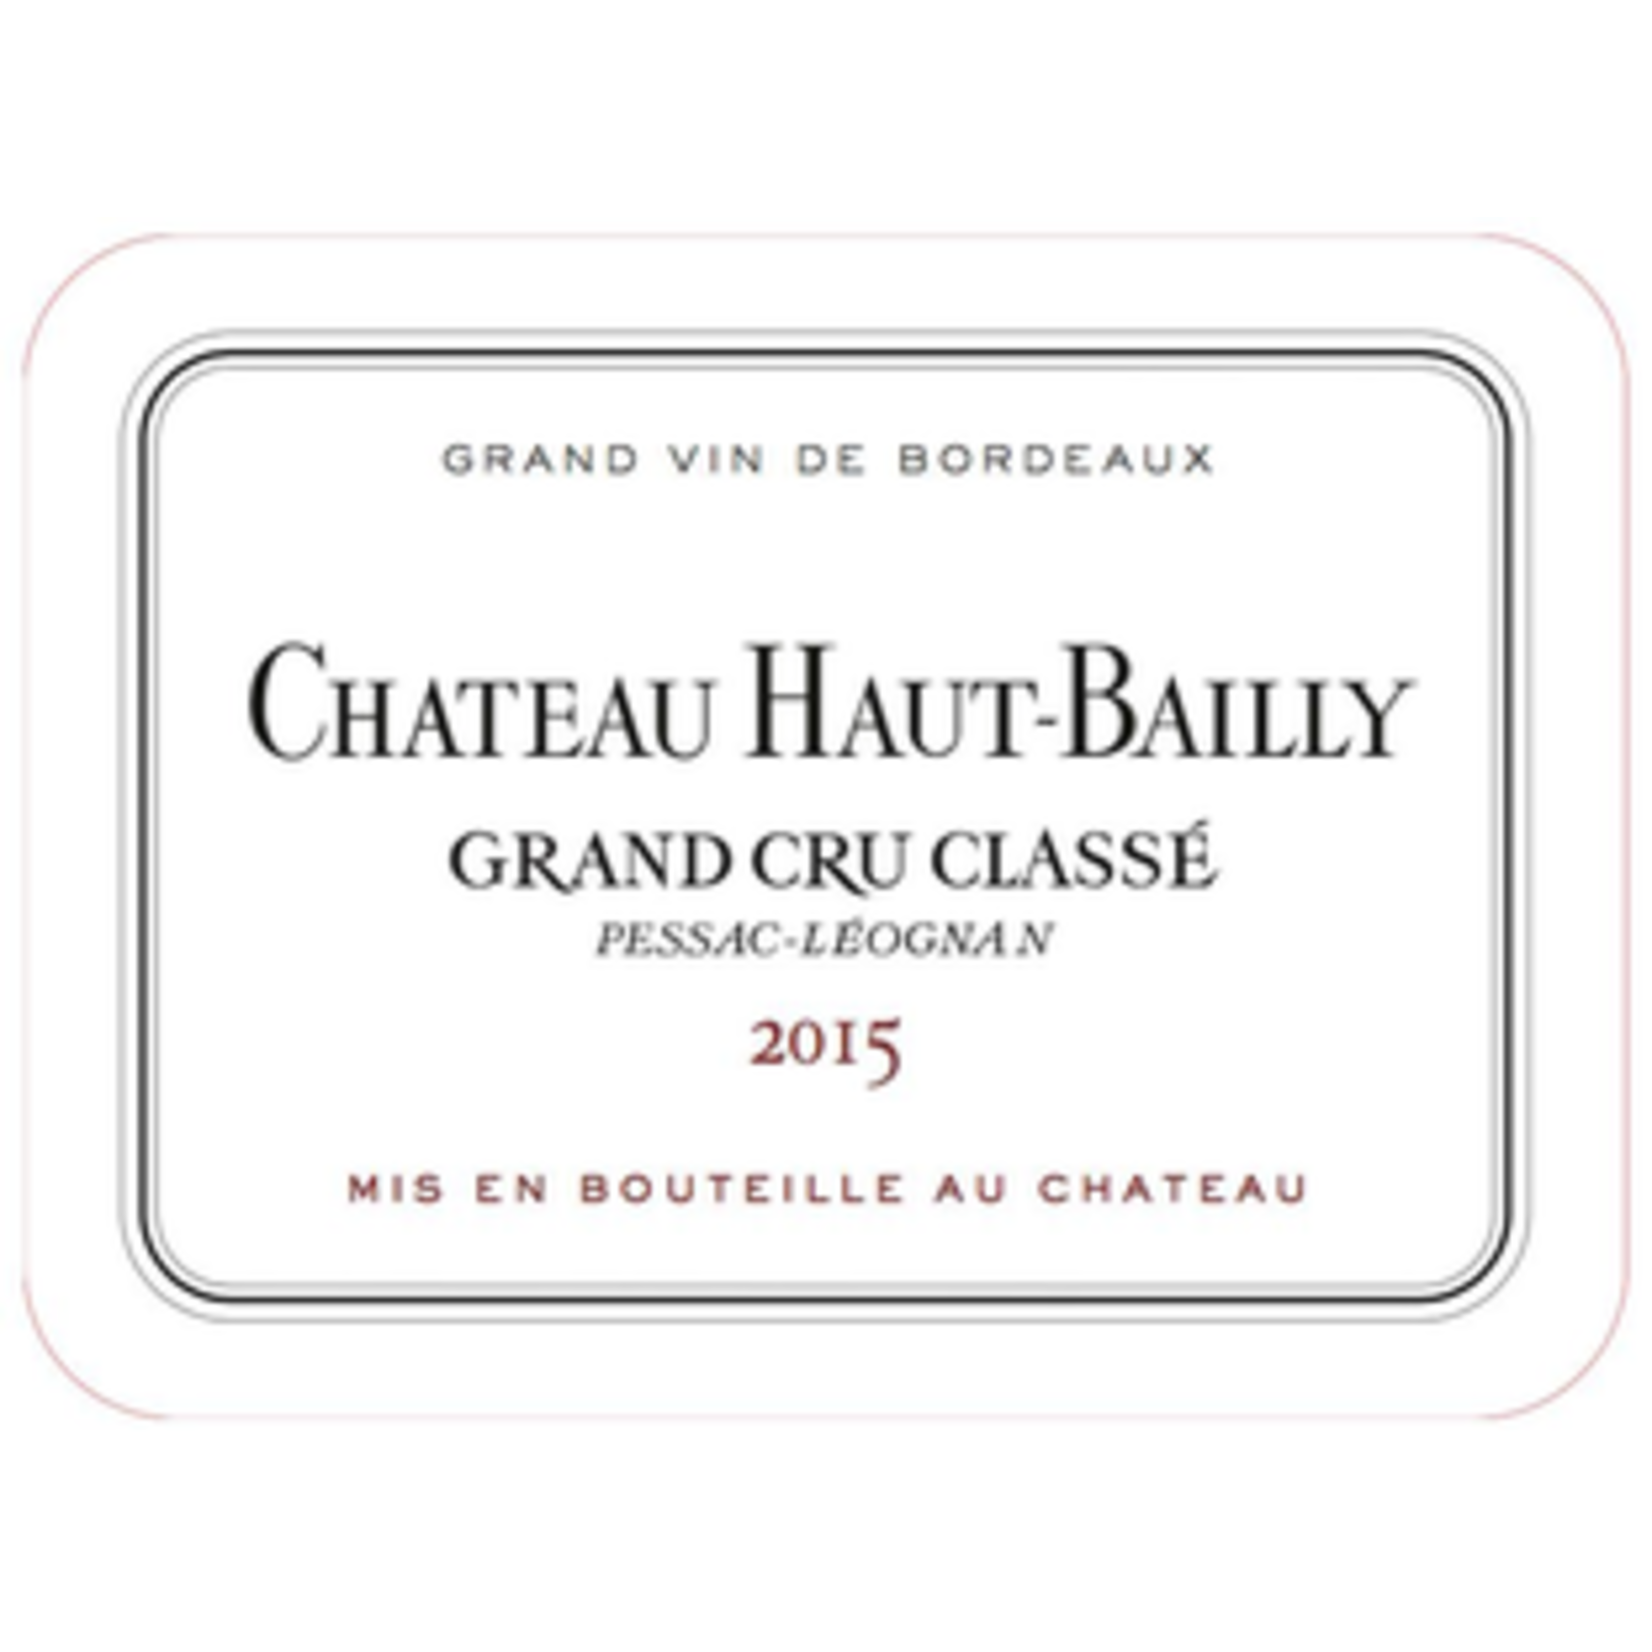 Wine Chateau Haut Bailly Grand Cru Classe Pessac-Leognan 2015